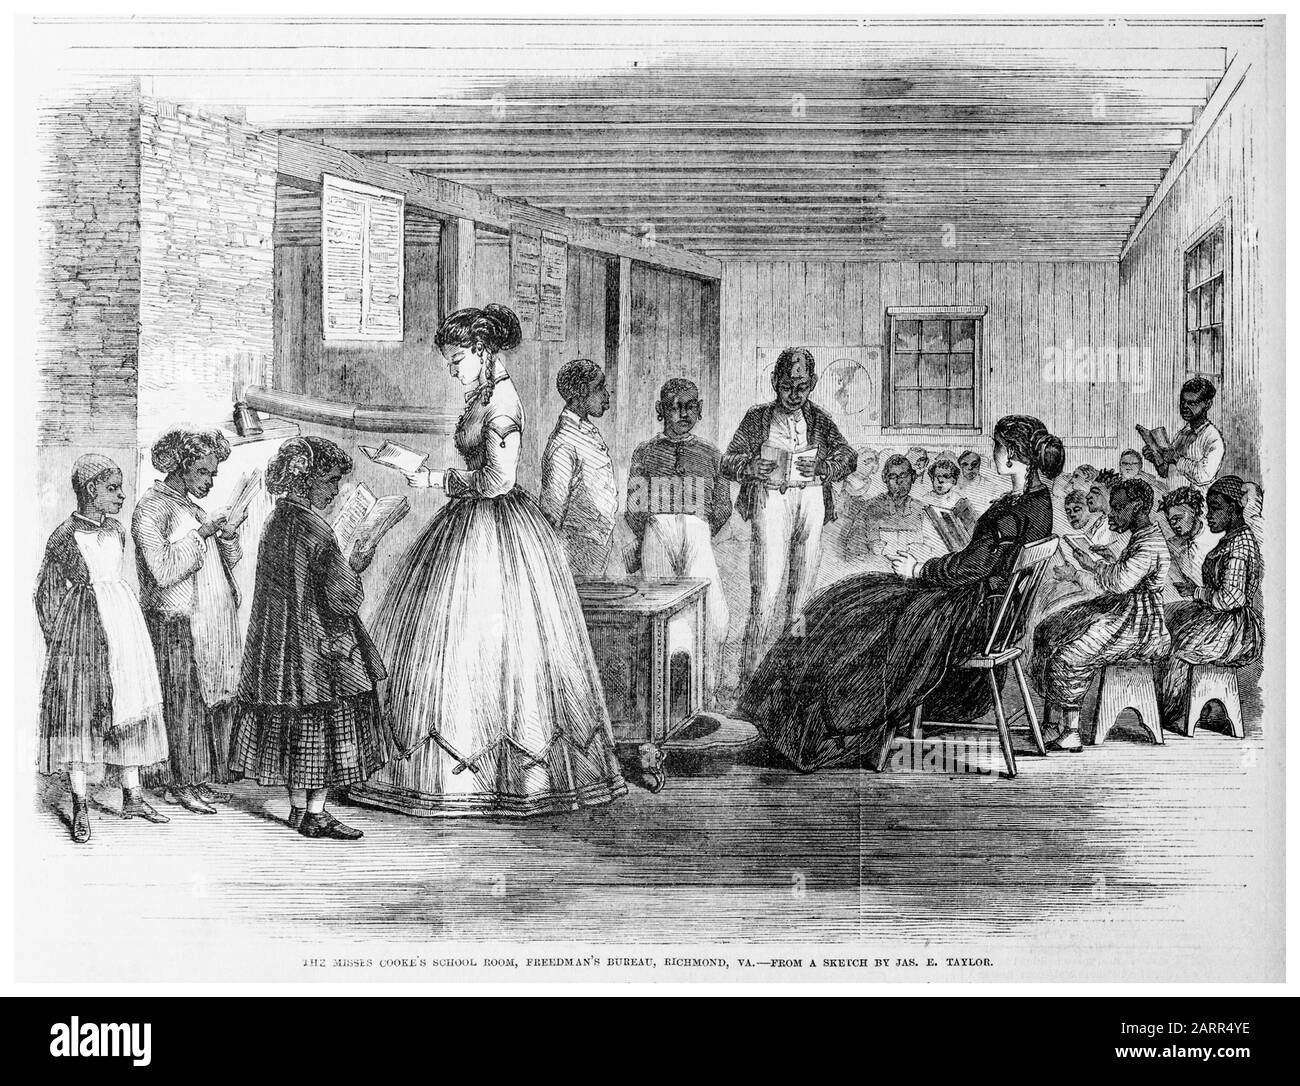 Freedmen's School, The Misses Cooke's School room, Freedman's Bureau, Richmond, Virginie, éducation pour les enfants d'esclaves Afro-américains libérés, imprimer 1866 Banque D'Images